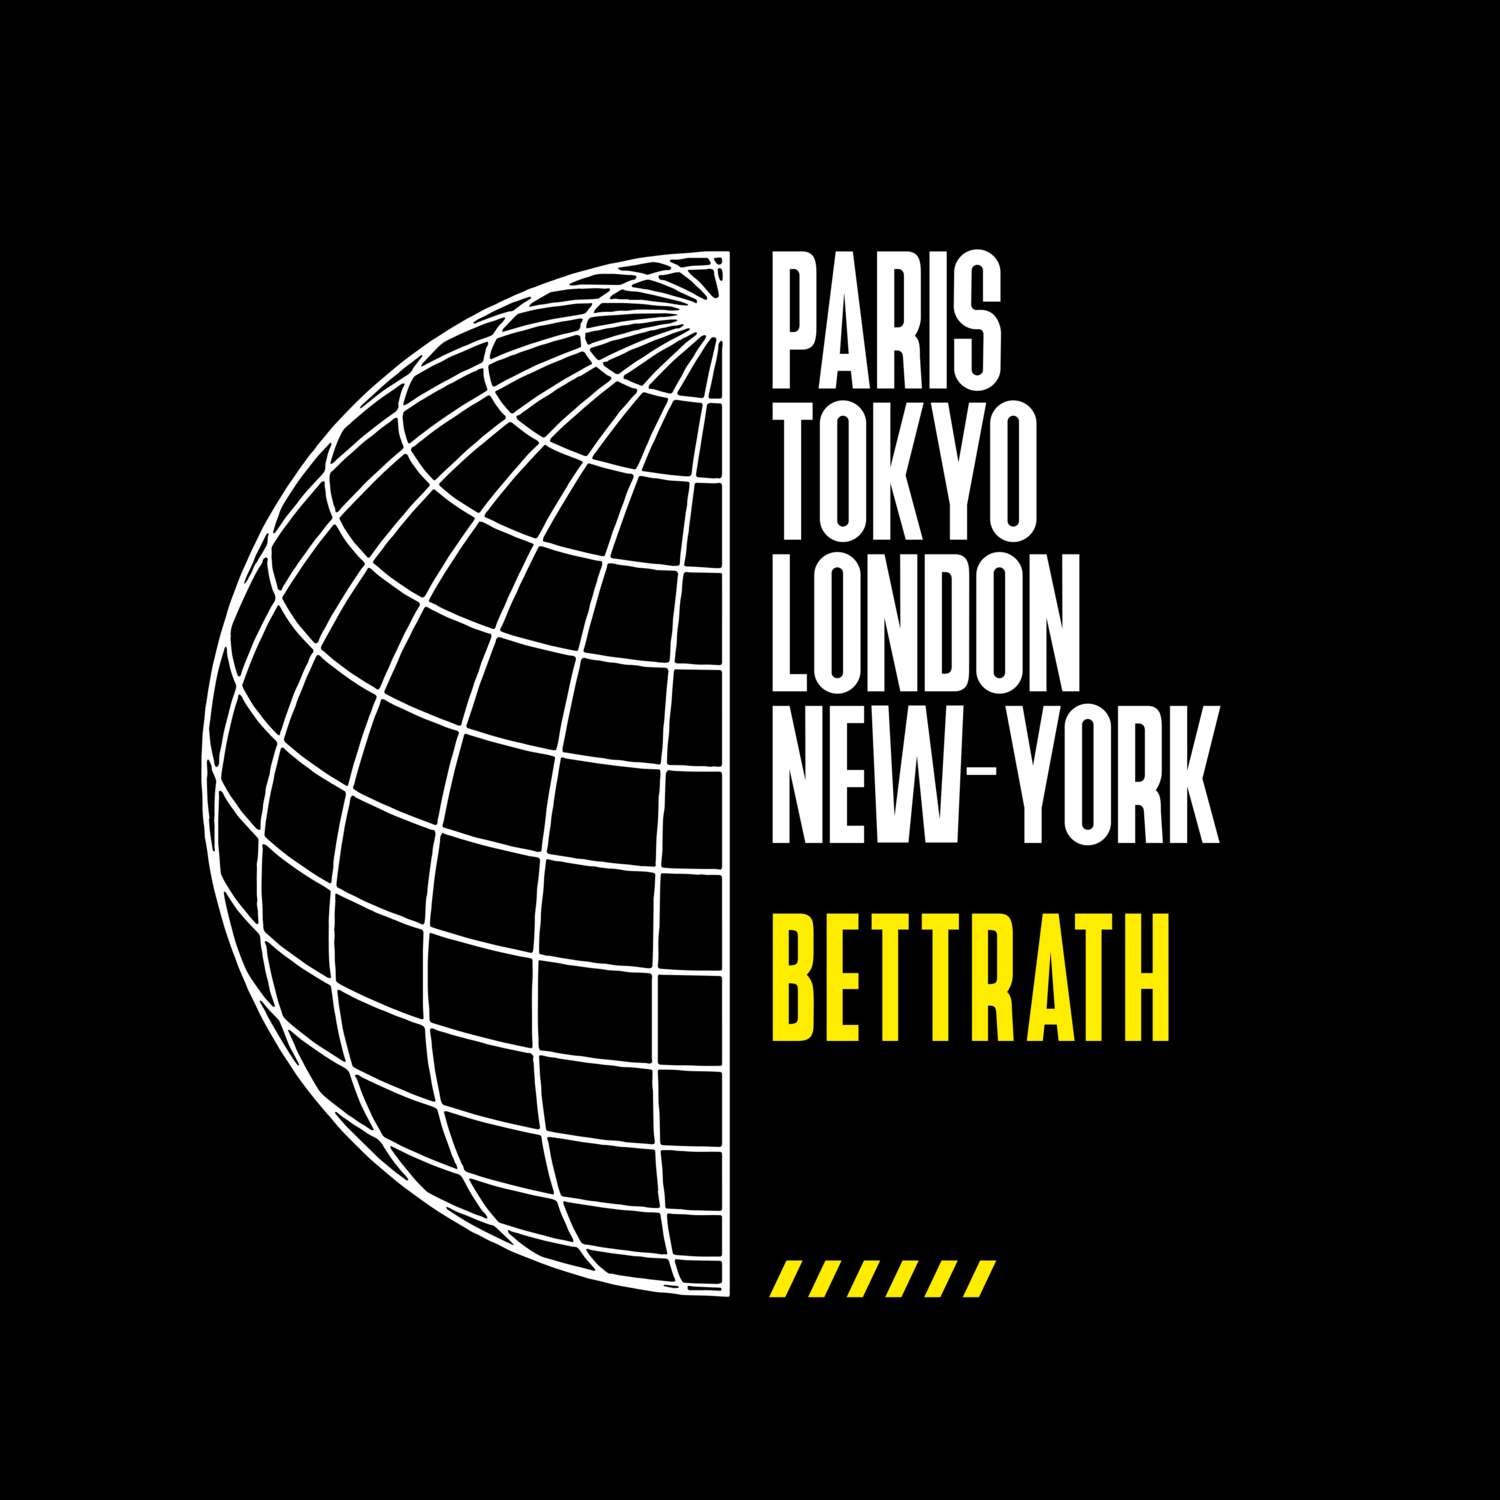 Bettrath T-Shirt »Paris Tokyo London«